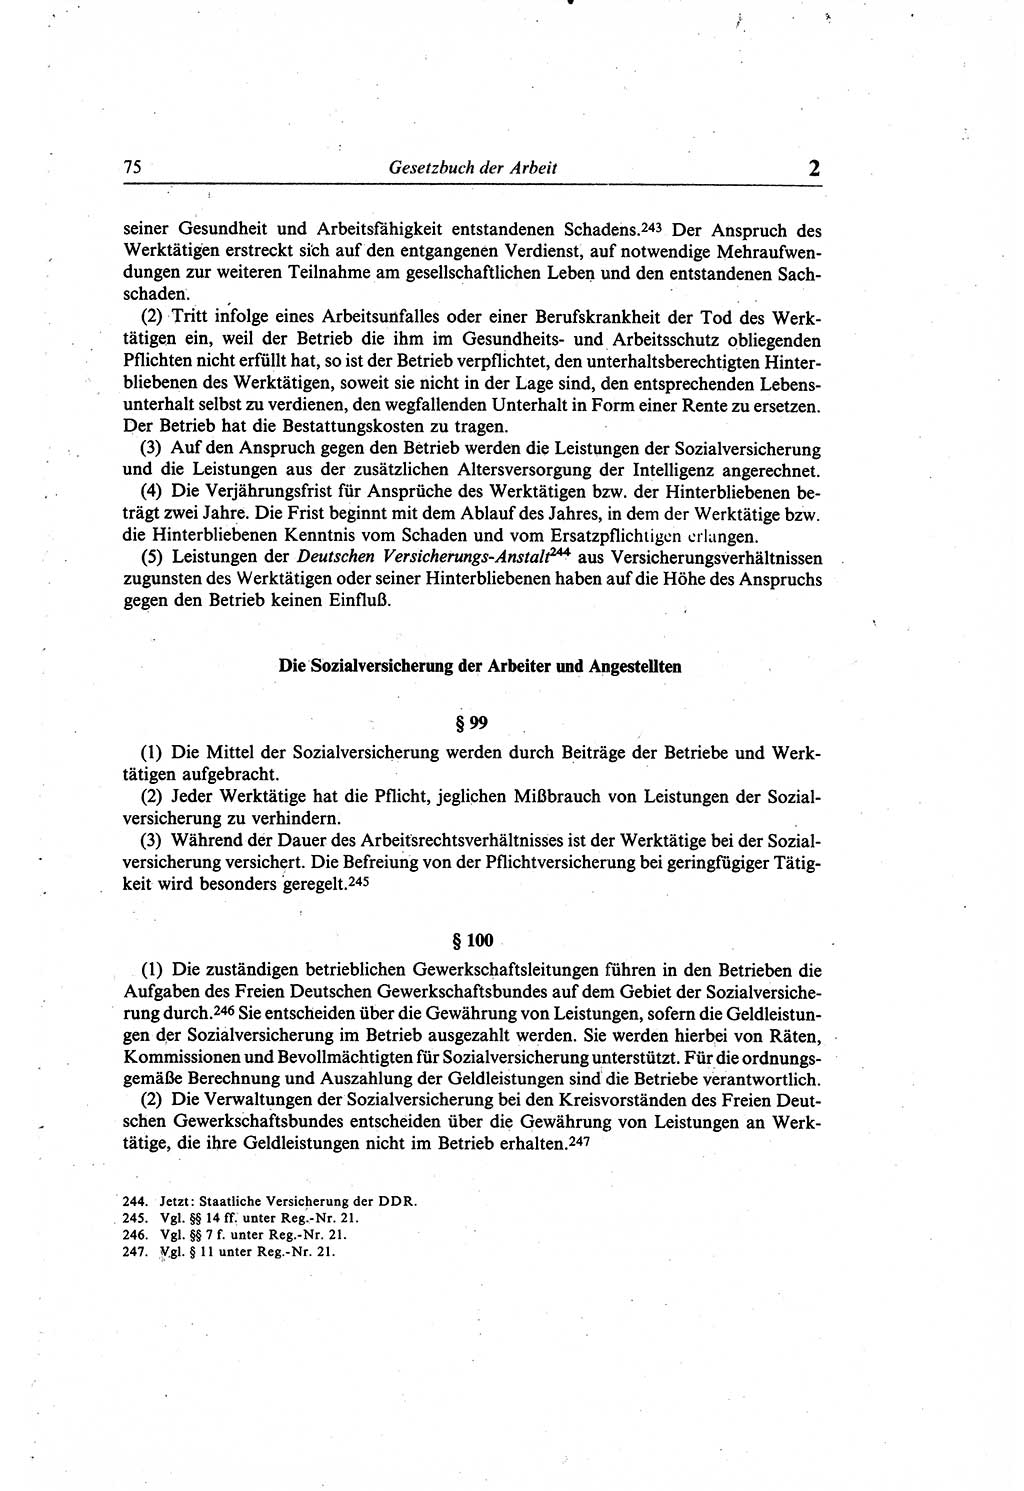 Gesetzbuch der Arbeit (GBA) und andere ausgewählte rechtliche Bestimmungen [Deutsche Demokratische Republik (DDR)] 1968, Seite 75 (GBA DDR 1968, S. 75)